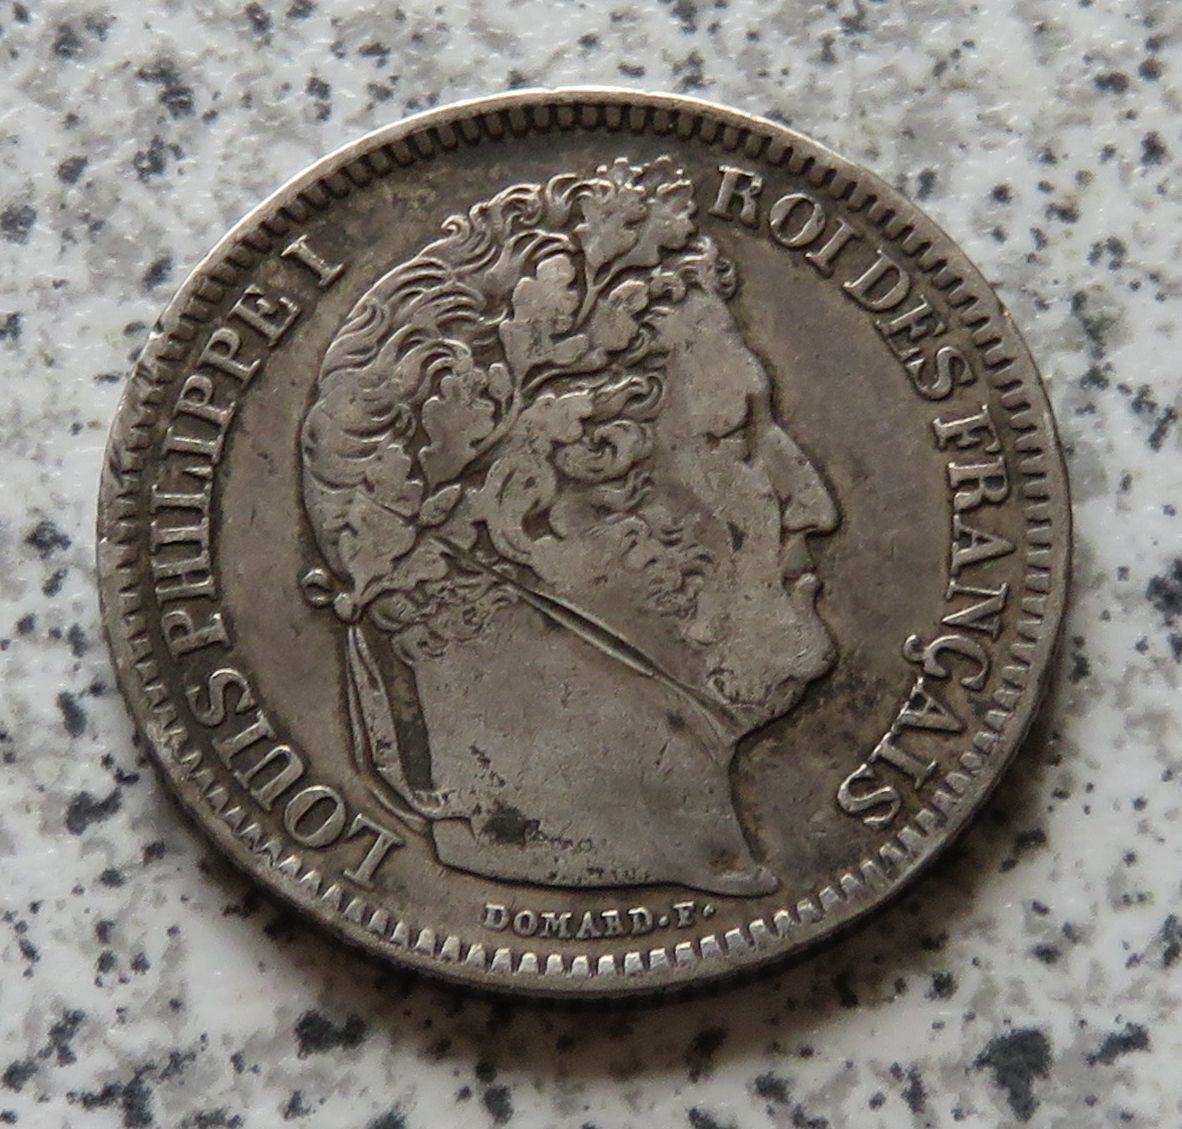  Frankreich 2 Francs 1843 W   